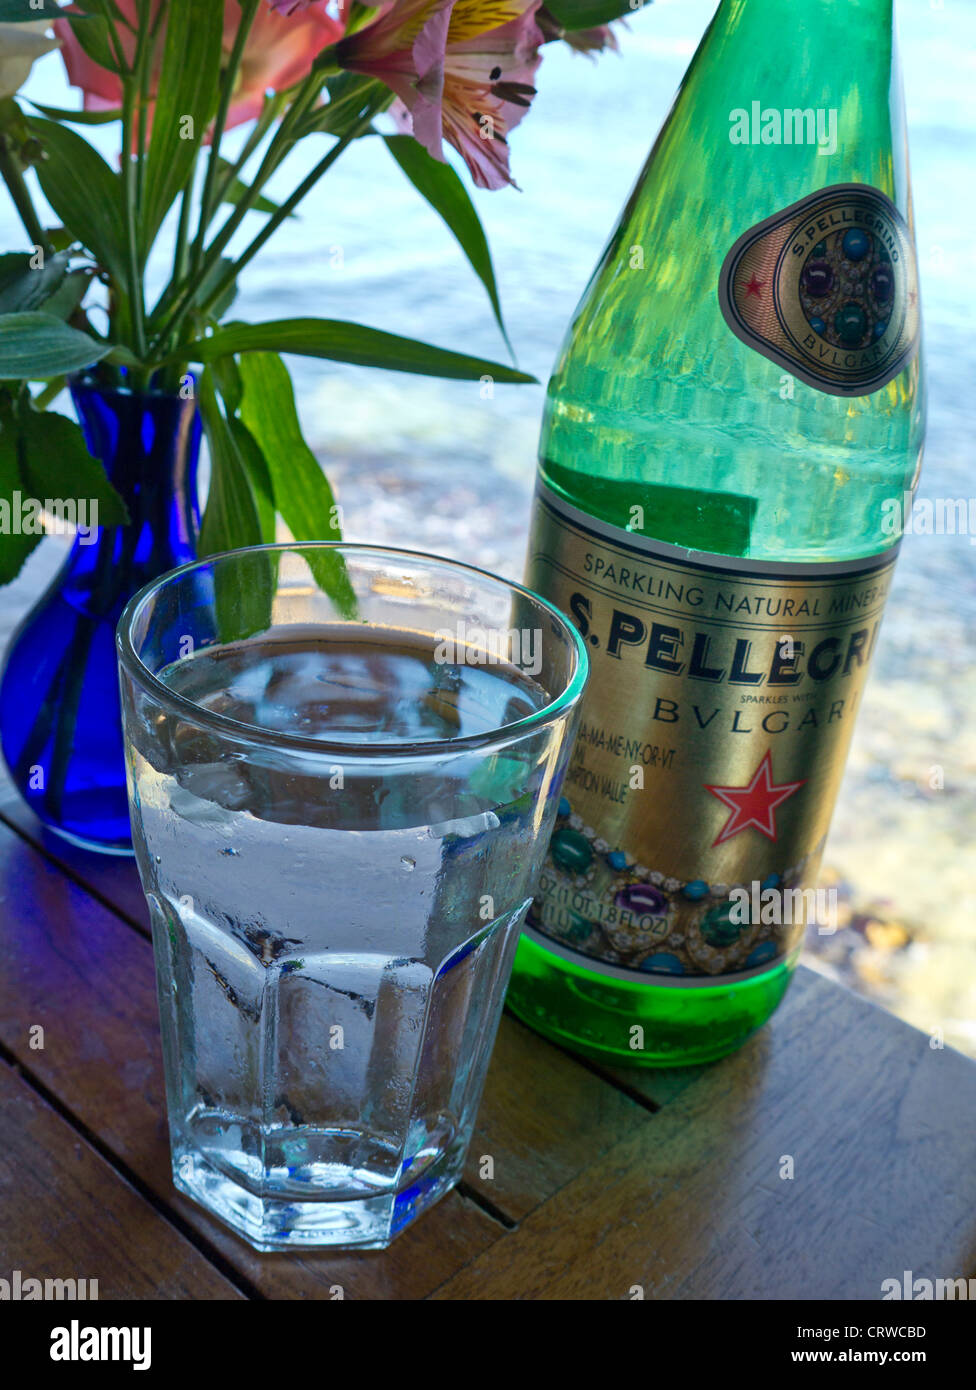 Pellegrino Bulgari l'eau en bouteille en verre de luxe et restaurant floral sur table avec vue sur la mer Banque D'Images